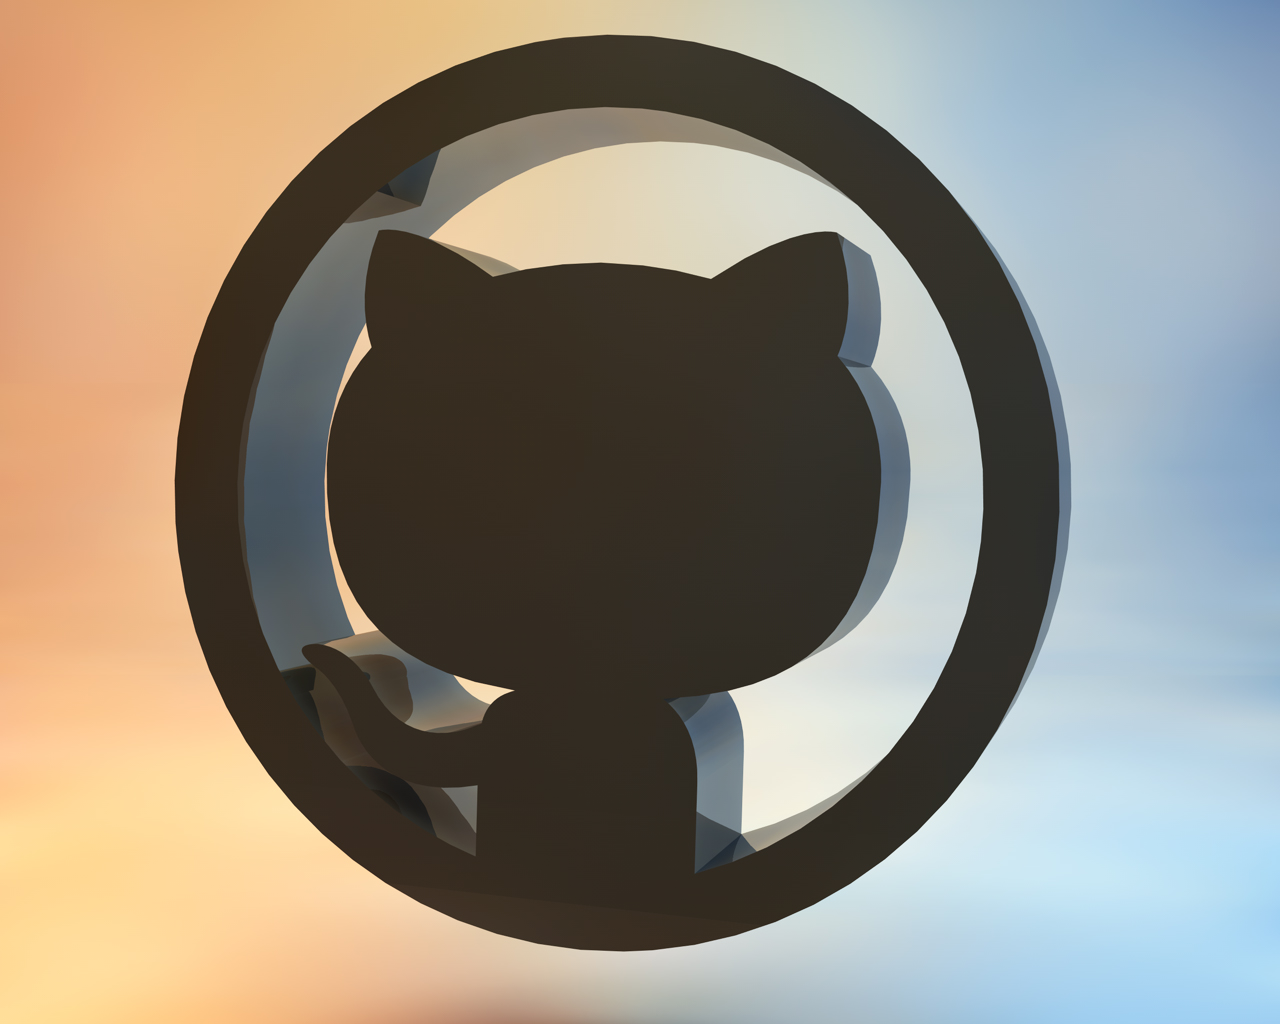 Github 3D logo version 2